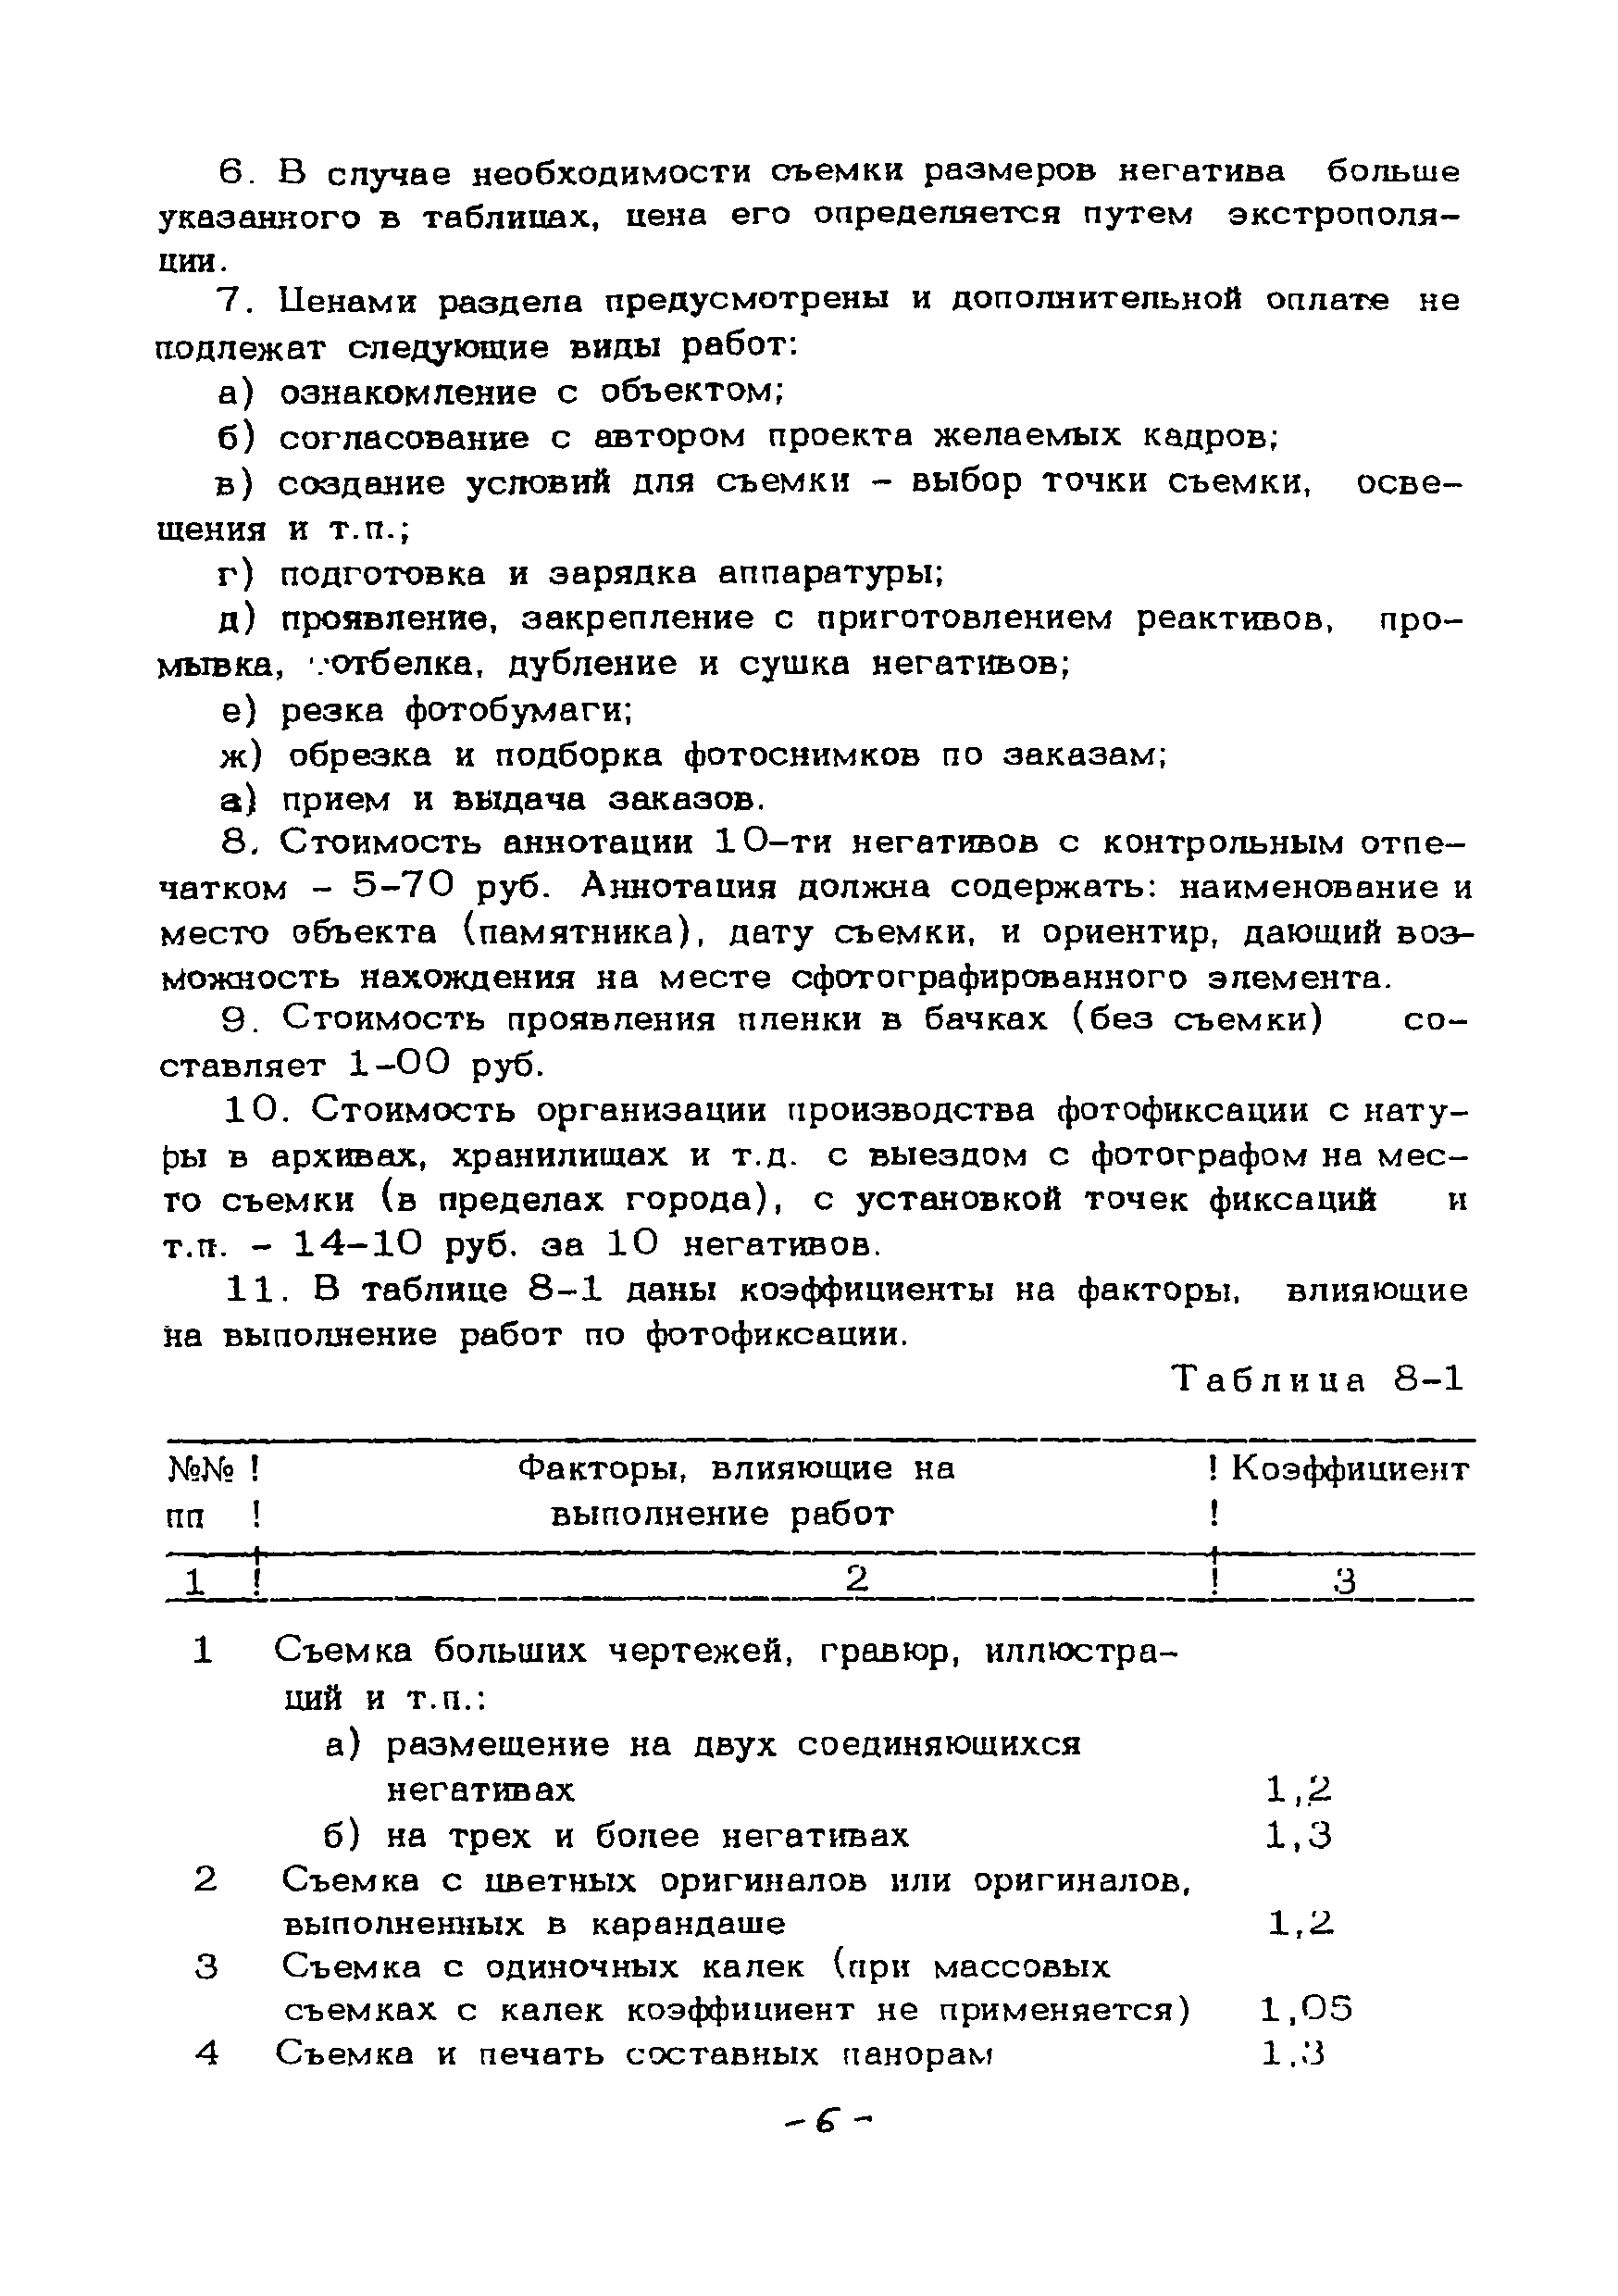 СЦНПР 91-8